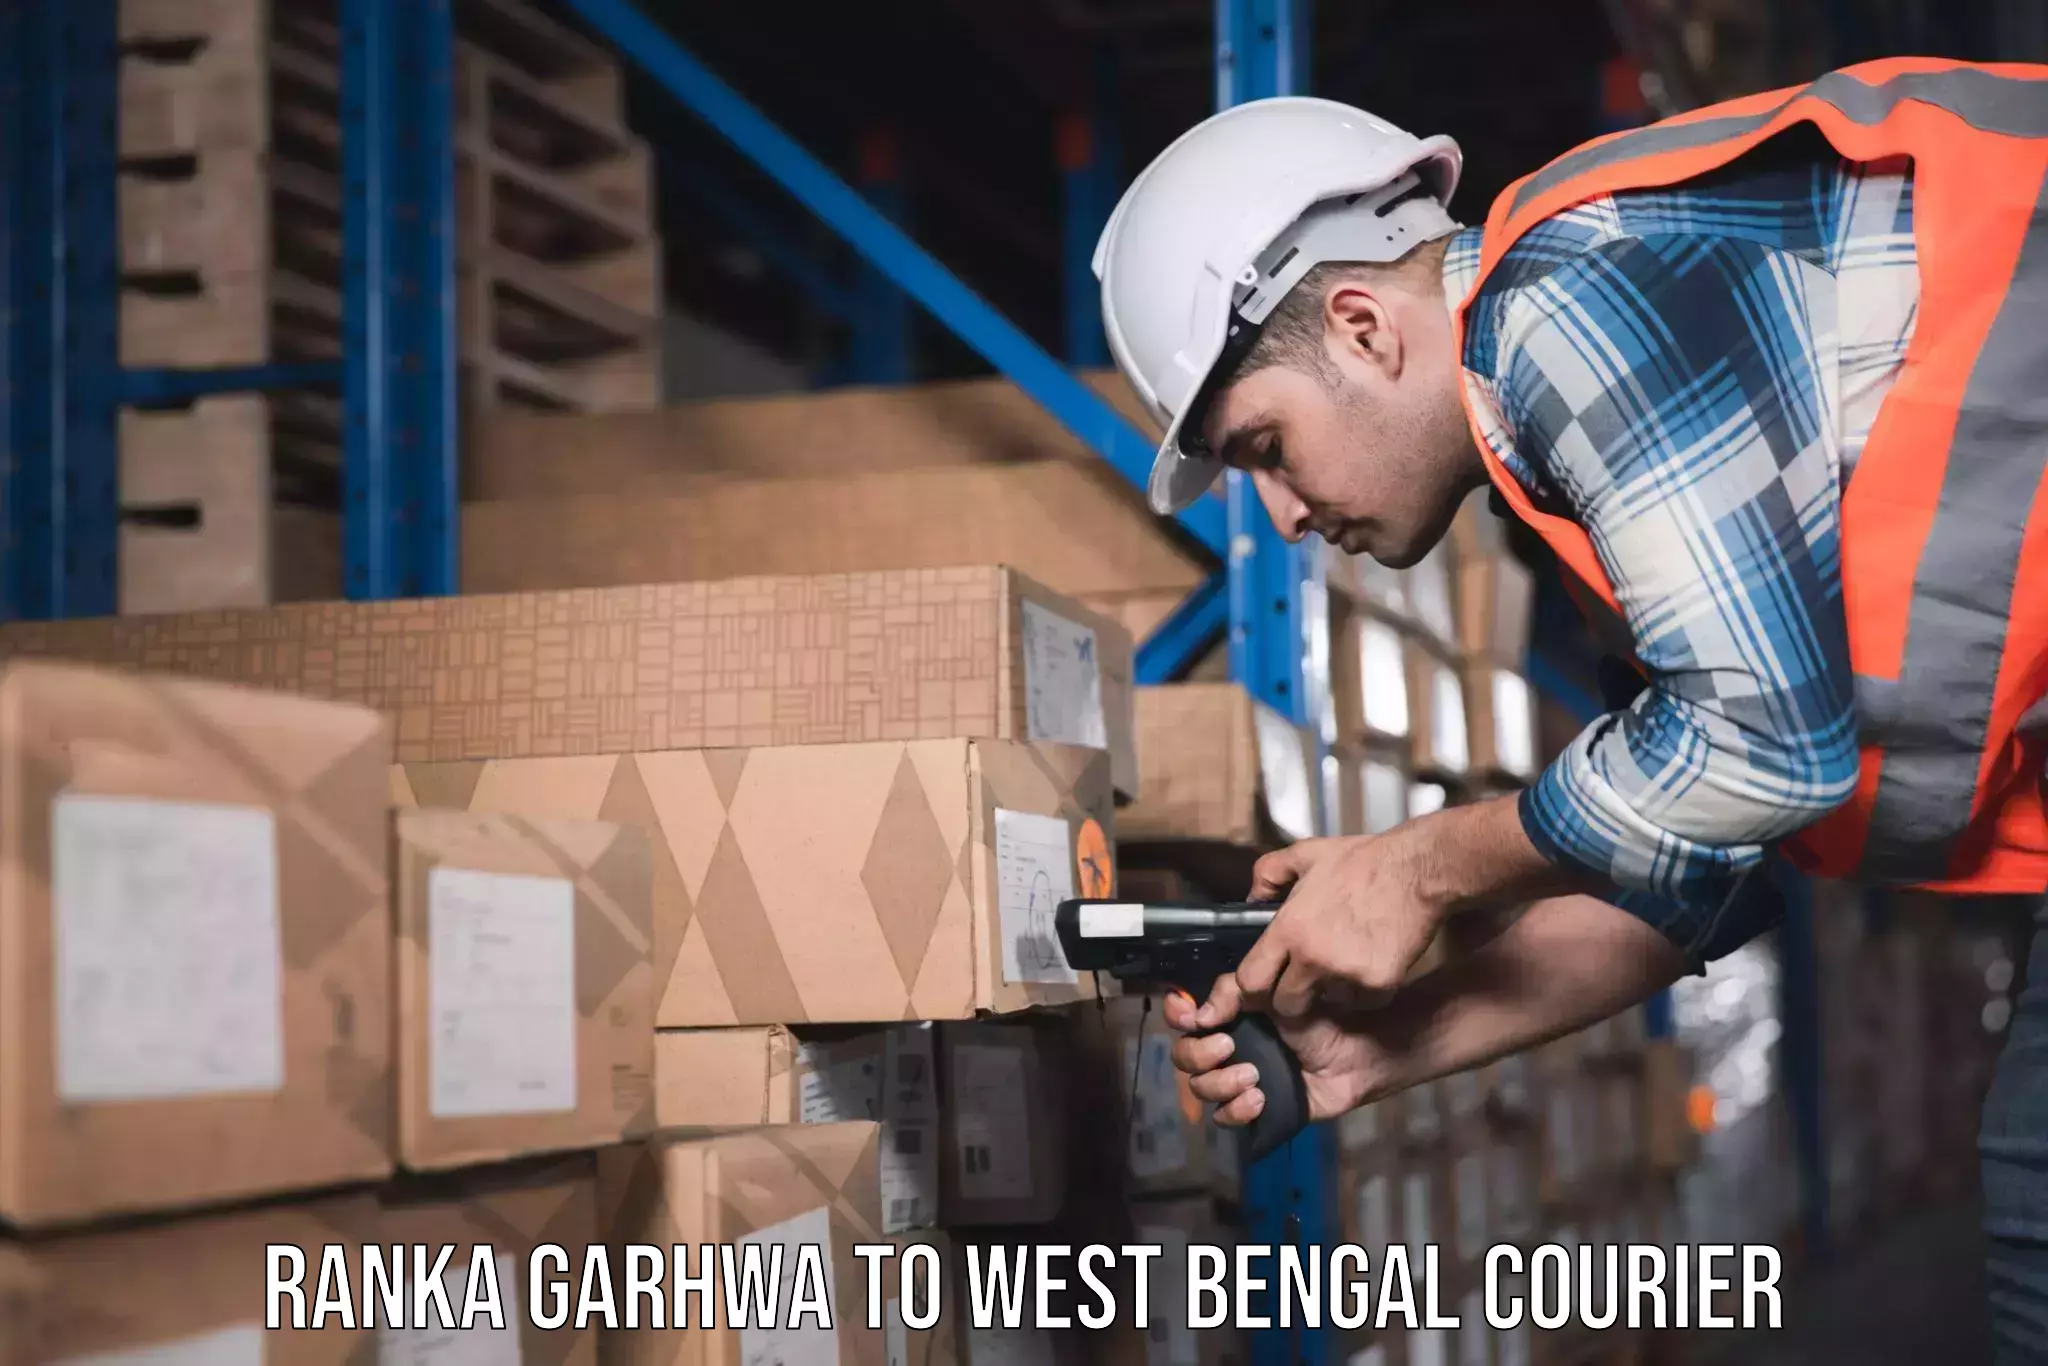 Furniture moving assistance Ranka Garhwa to Chandrakona Road